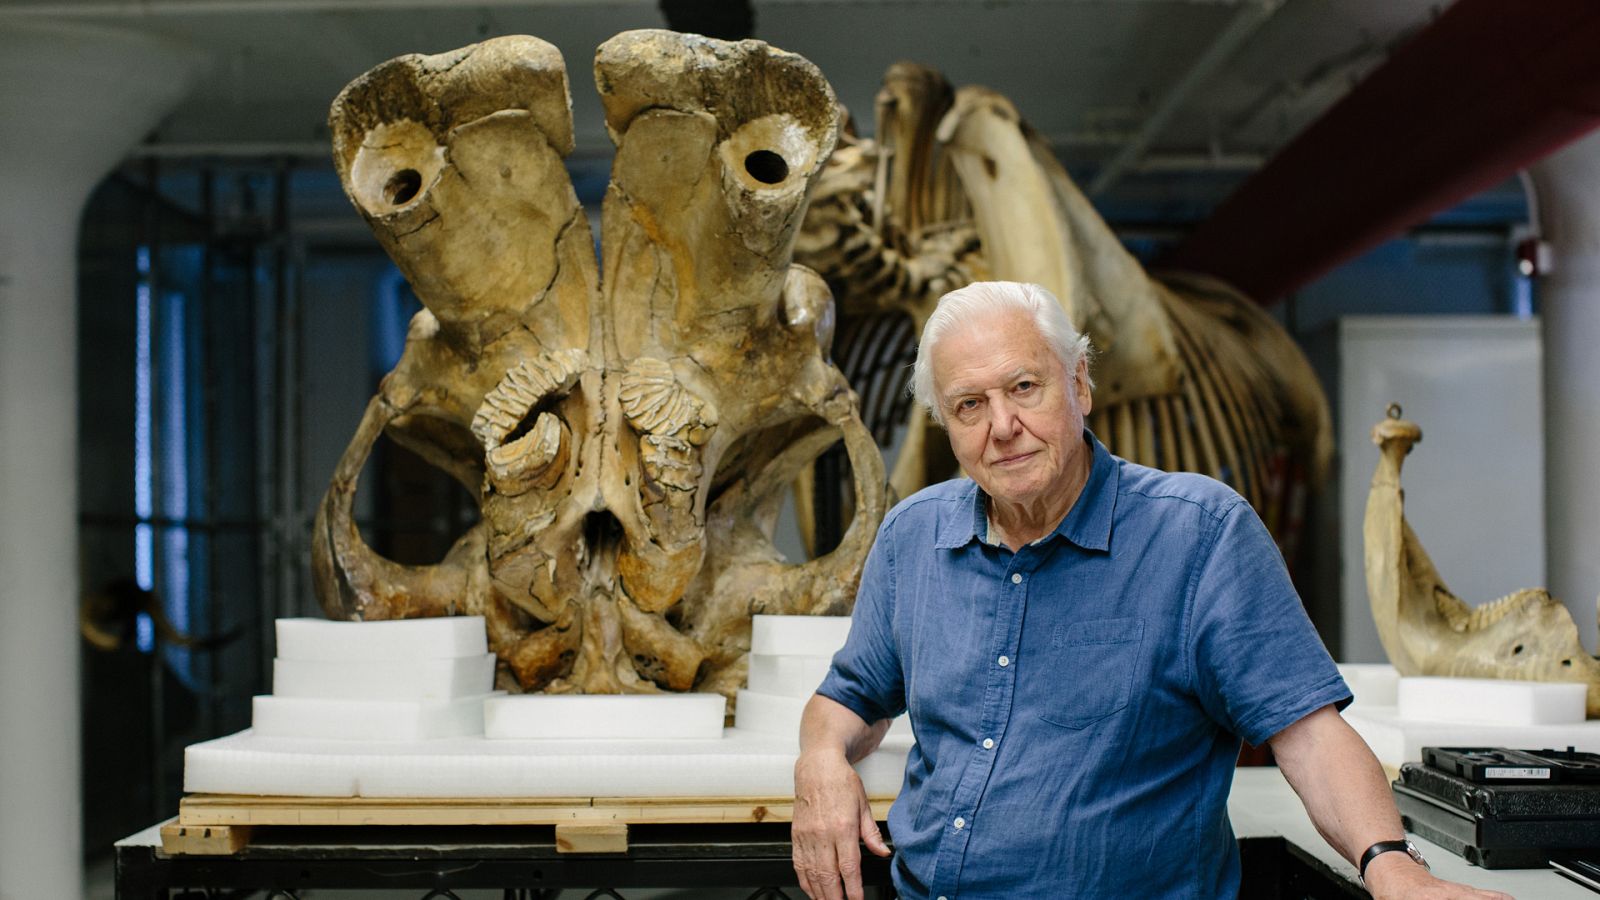 Somos documentales - David Attenborough y el elefante gigante - Documental en RTVE